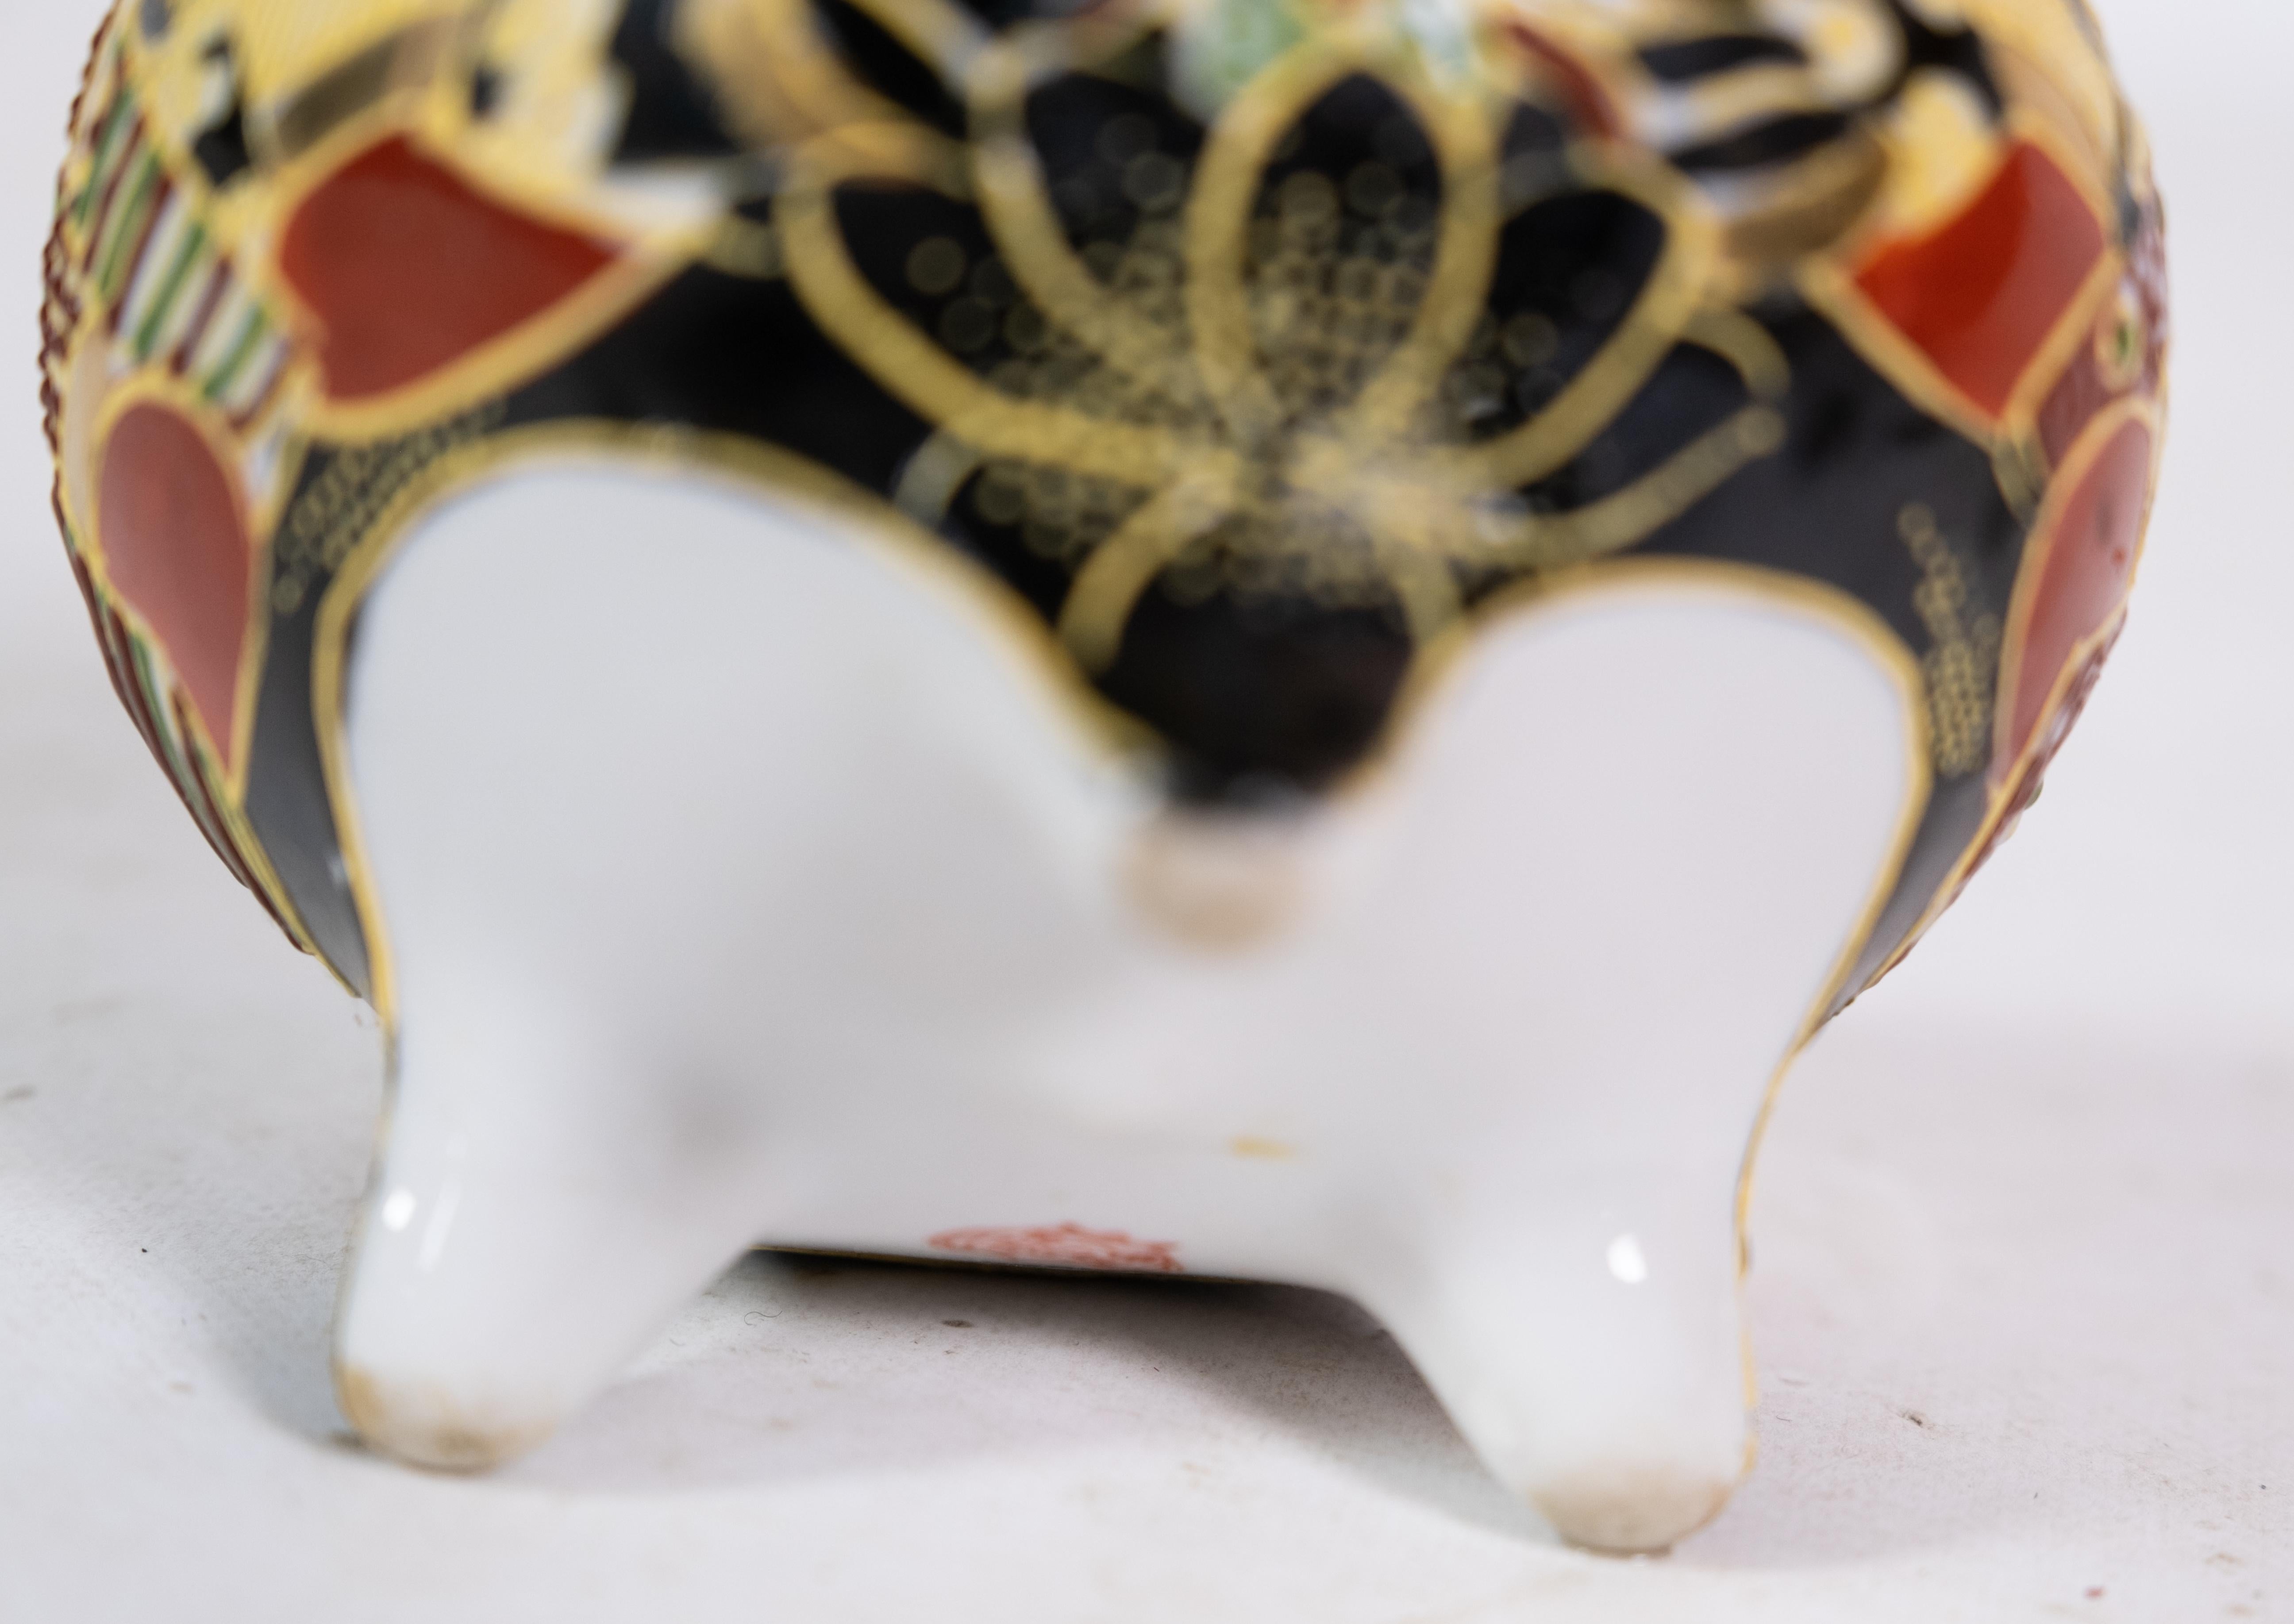 Schale aus Porzellan japanischer Herkunft mit Dekorationen aus handgemalten Farben und Motiven aus den 1940er Jahren.

Dieses Produkt wird in unserer Fachwerkstatt von unseren geschulten Mitarbeitern gründlich geprüft, um die Produktqualität zu